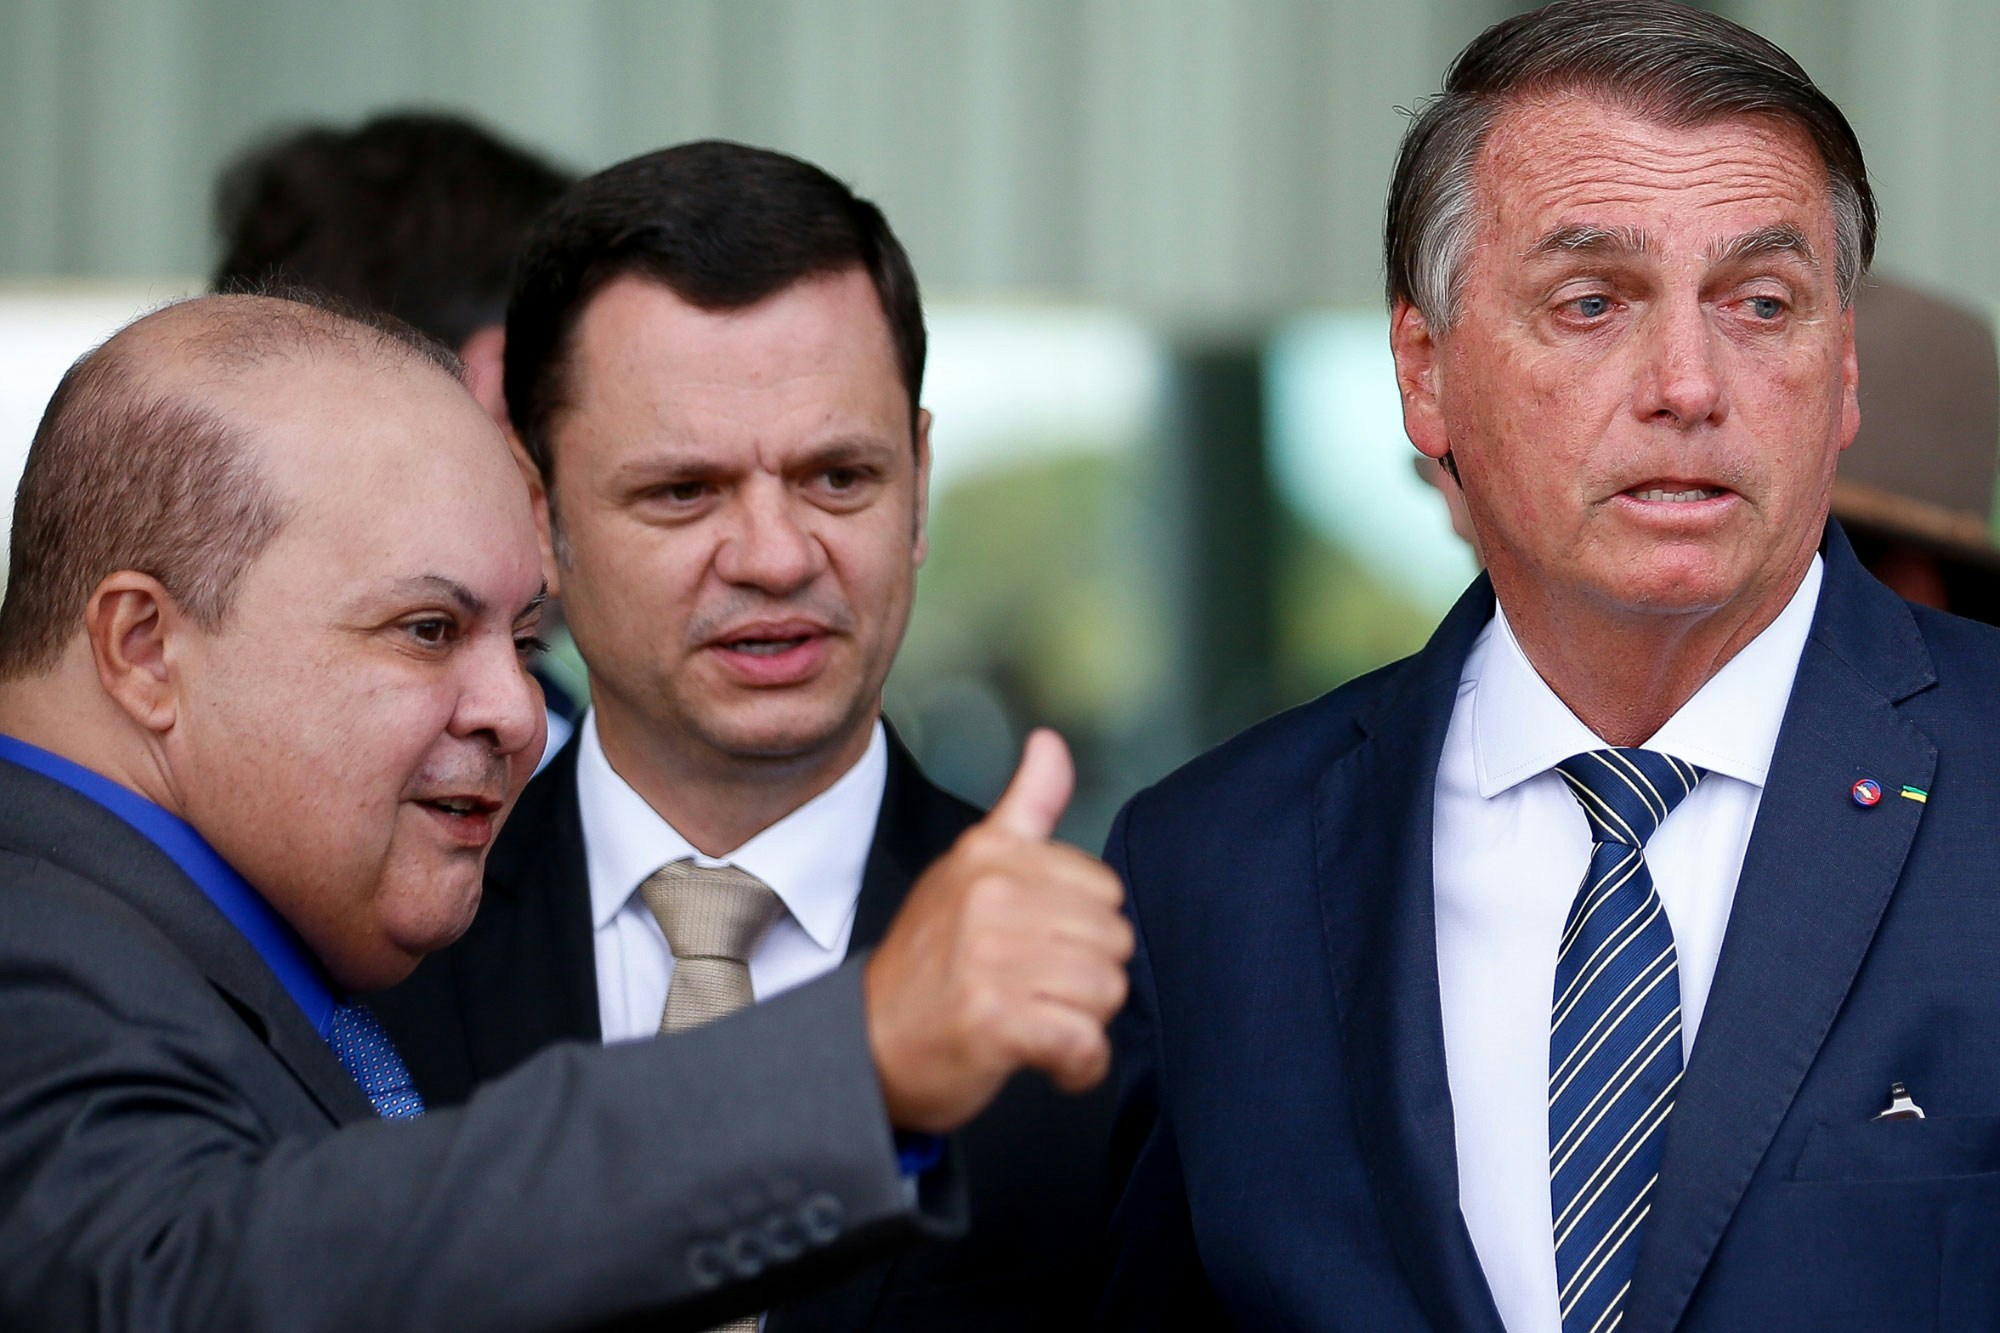 O presidente Jair Bolsonaro (PL), com o governador reeleito do Distrito Federal, Ibaneis Rocha (MDB), que declarou apoio ao presidente no segundo turno, durante entrevista coletiva no Palácio da Alvorada, em Brasília, nesta quarta-feira.